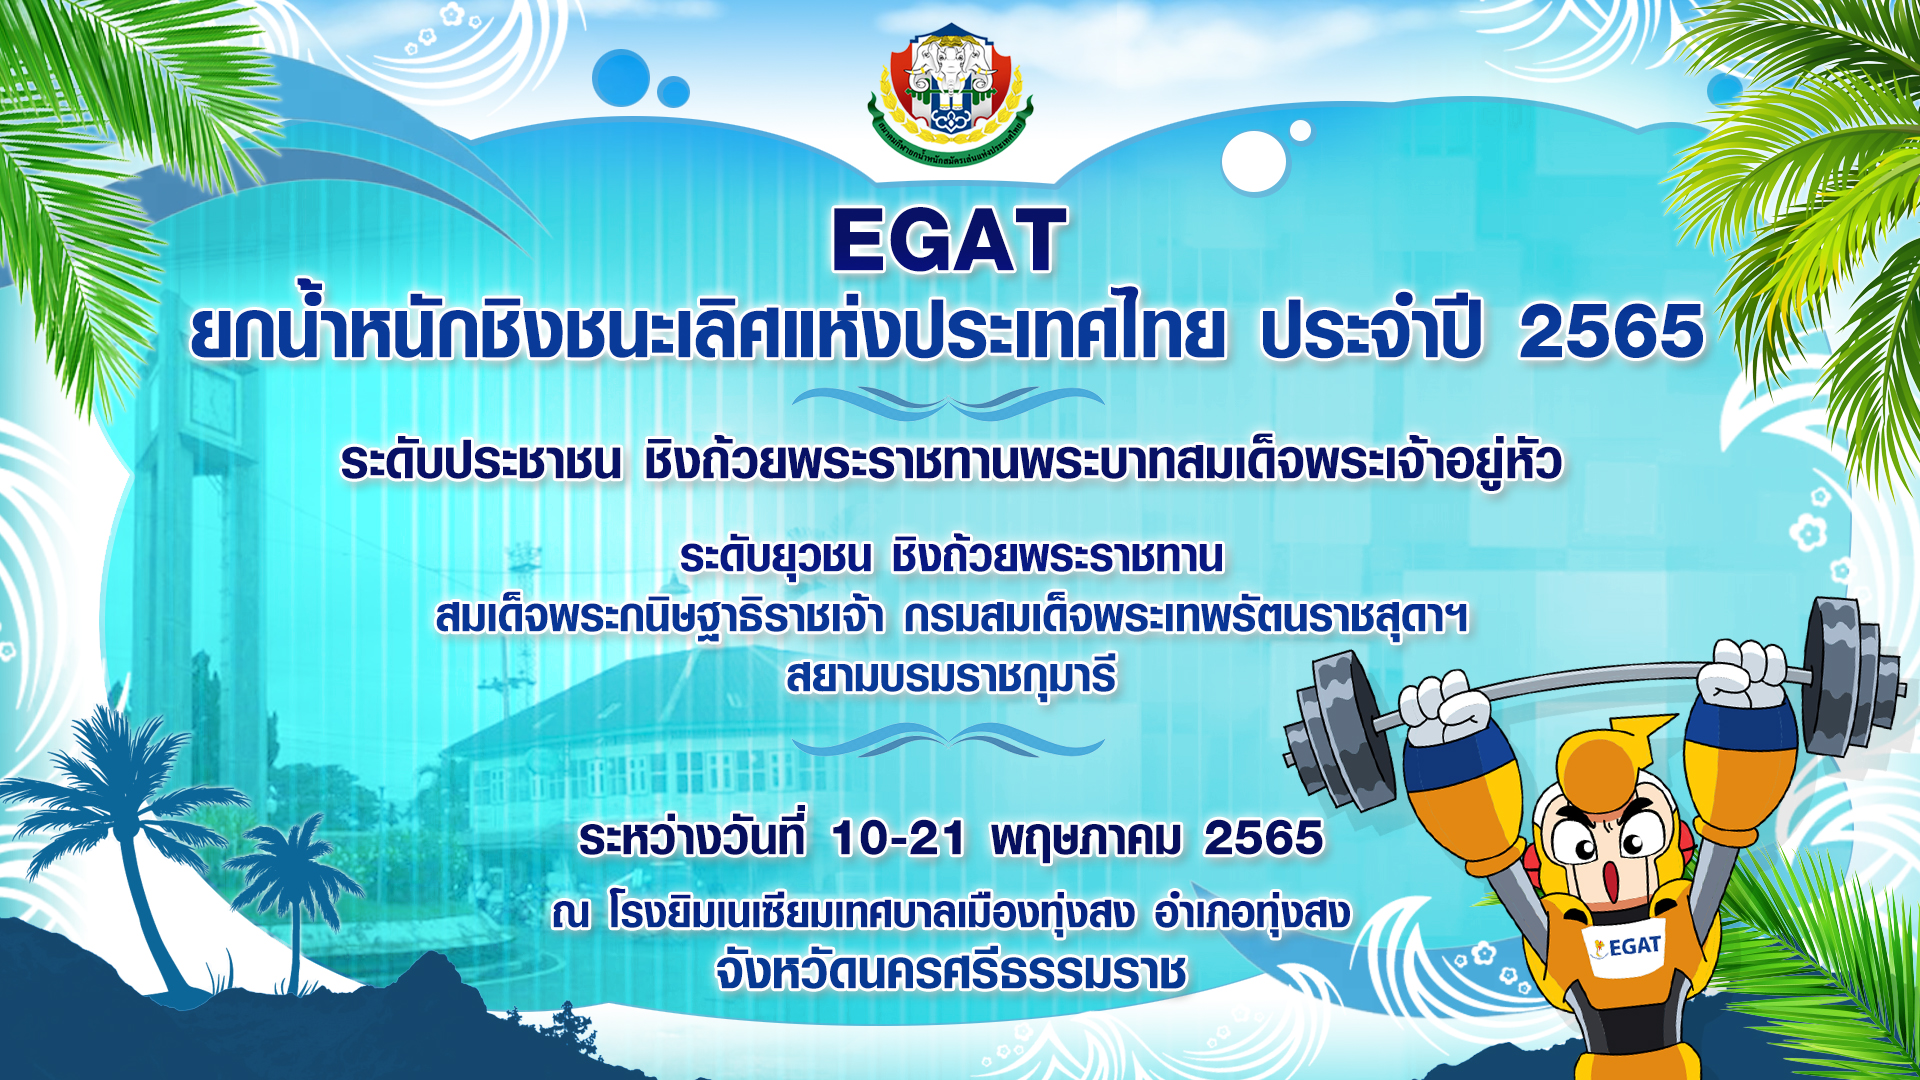 EGAT ยกน้ำหนักชิงชนะเลิศแห่งประเทศไทย ประจำปี 2565